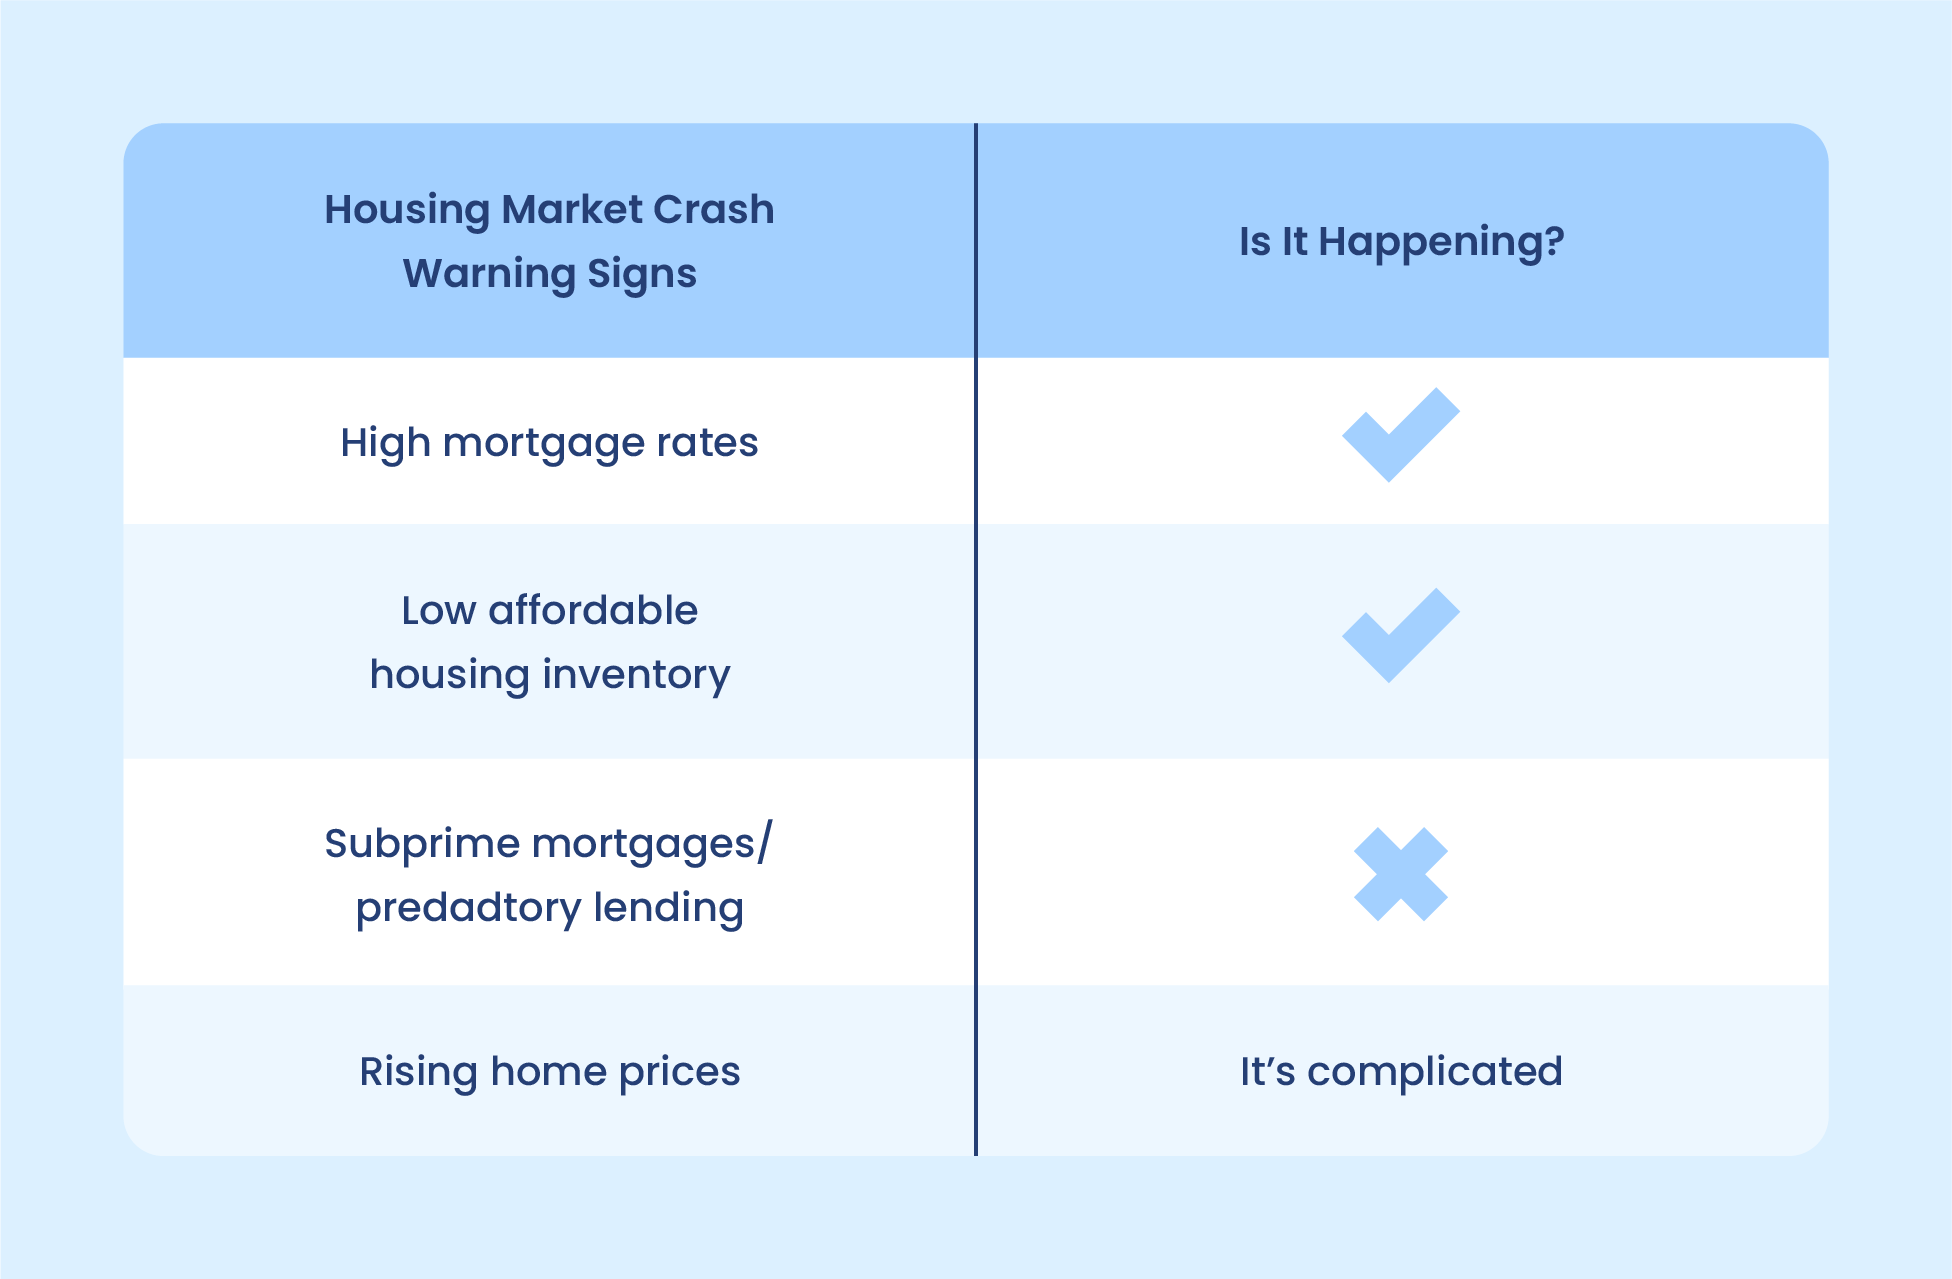 Signs of a housing market crash and warning indicators